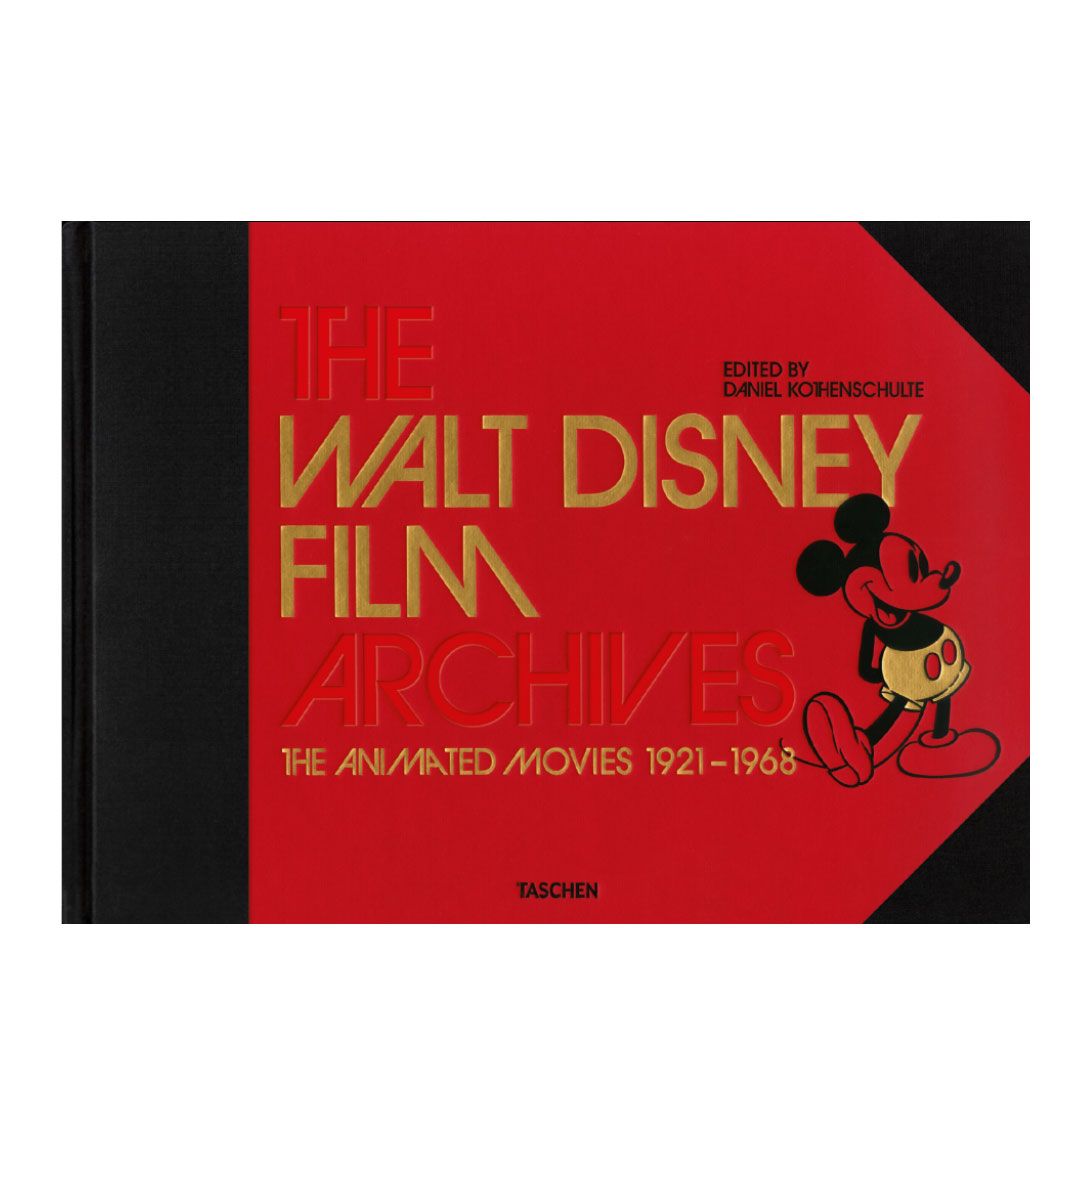 Les Archives des films Walt Disney 1921-1968